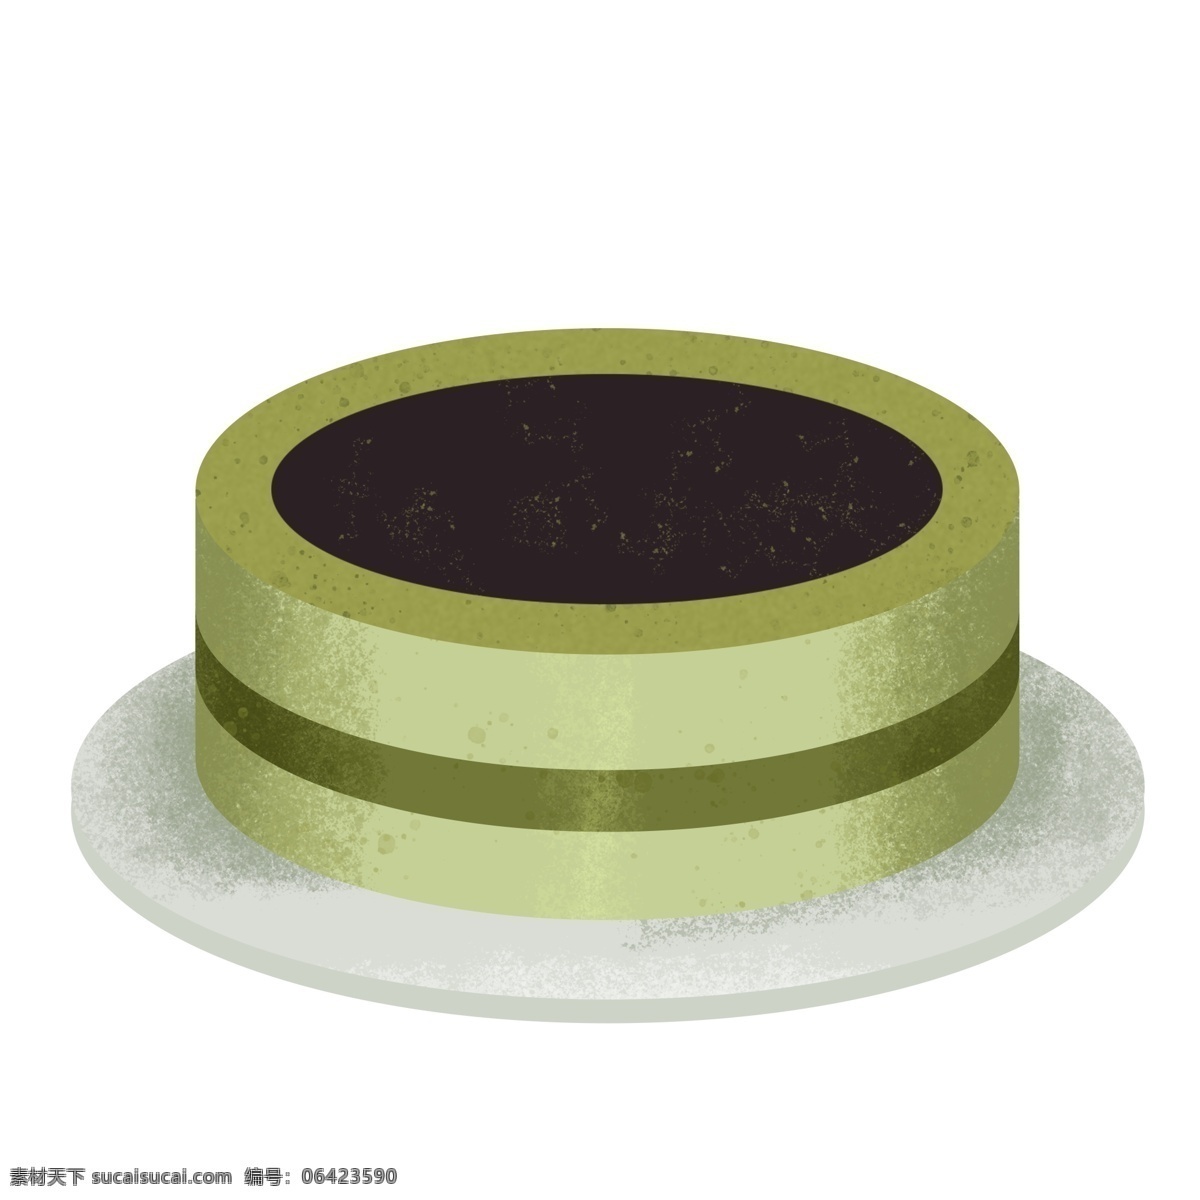 绿色 圆形 甜品 蛋糕 手工